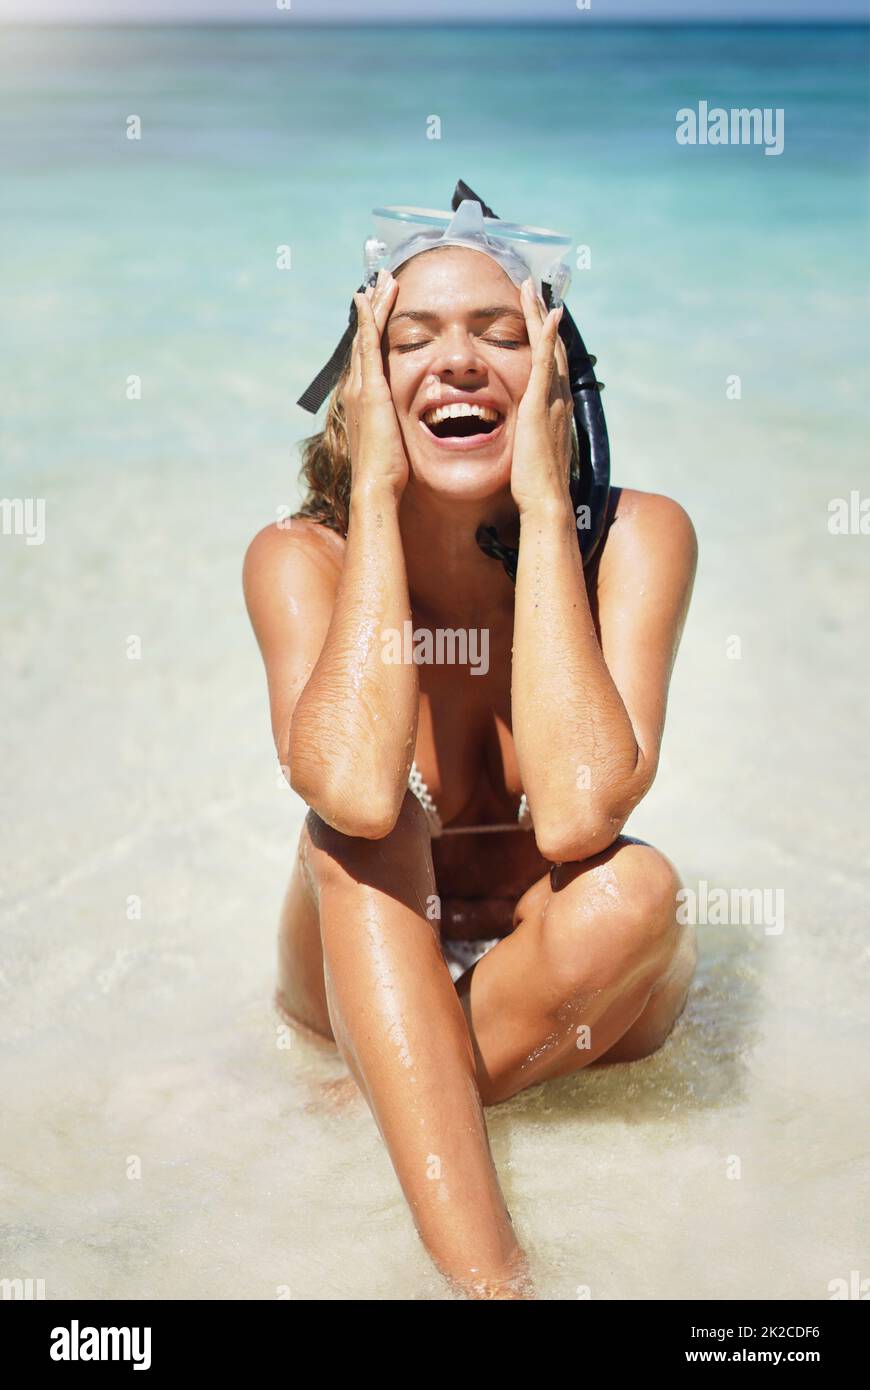 C'est toujours amusant au soleil. Photo courte d'une jeune femme attirante en équipement de plongée qui rit tout en étant assise sur la plage. Banque D'Images